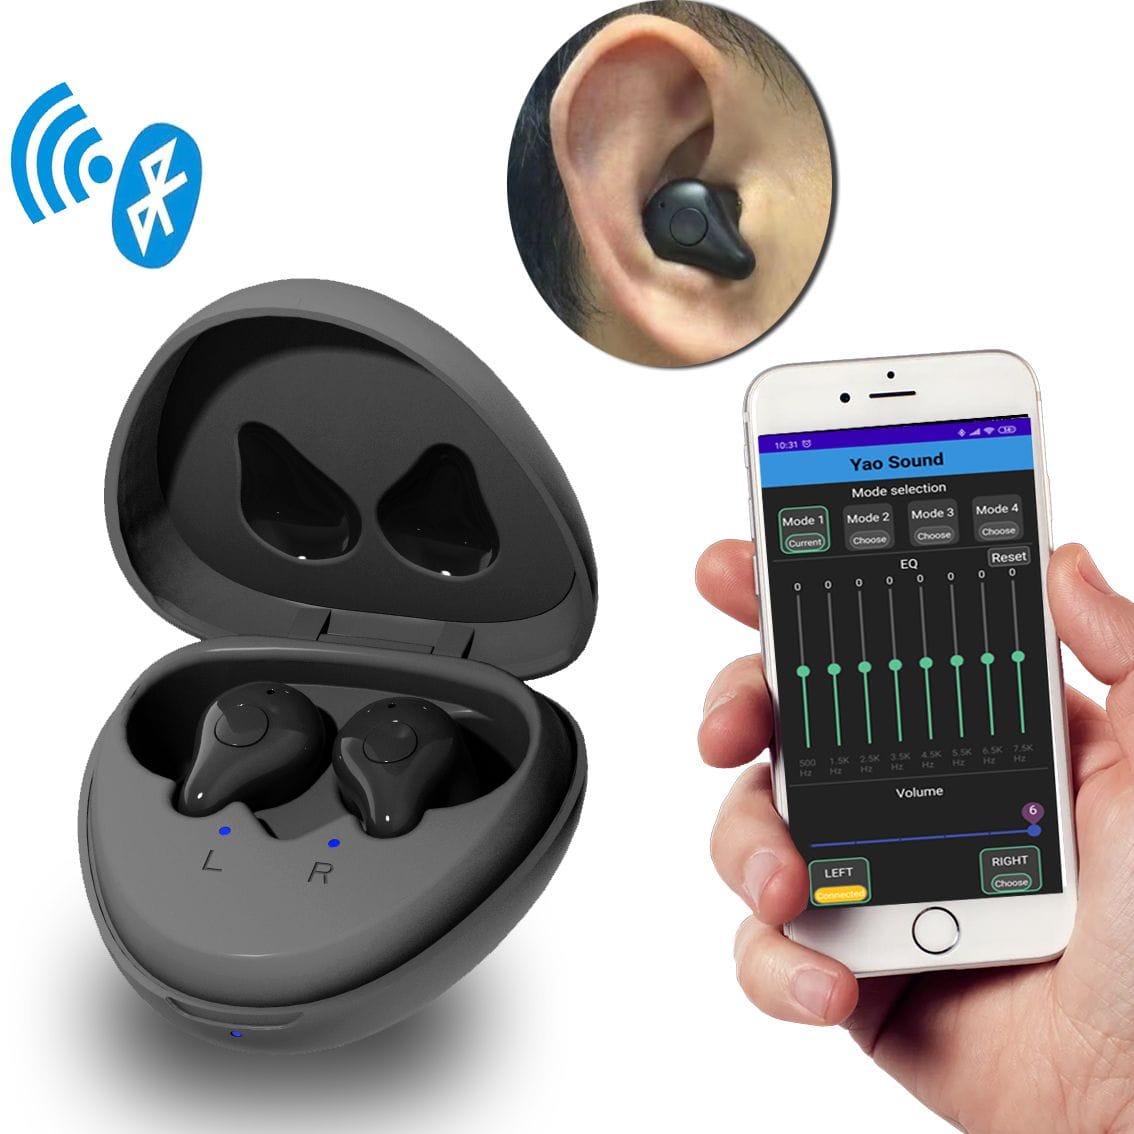 一对新的 eEAR 助听器和蓝牙 (BT) 耳塞合二为一，适用于左右耳。最先进的技术，易于使用的助听器应用程序。助听器行业中的一种。以实惠的价格提供最优质的产品。